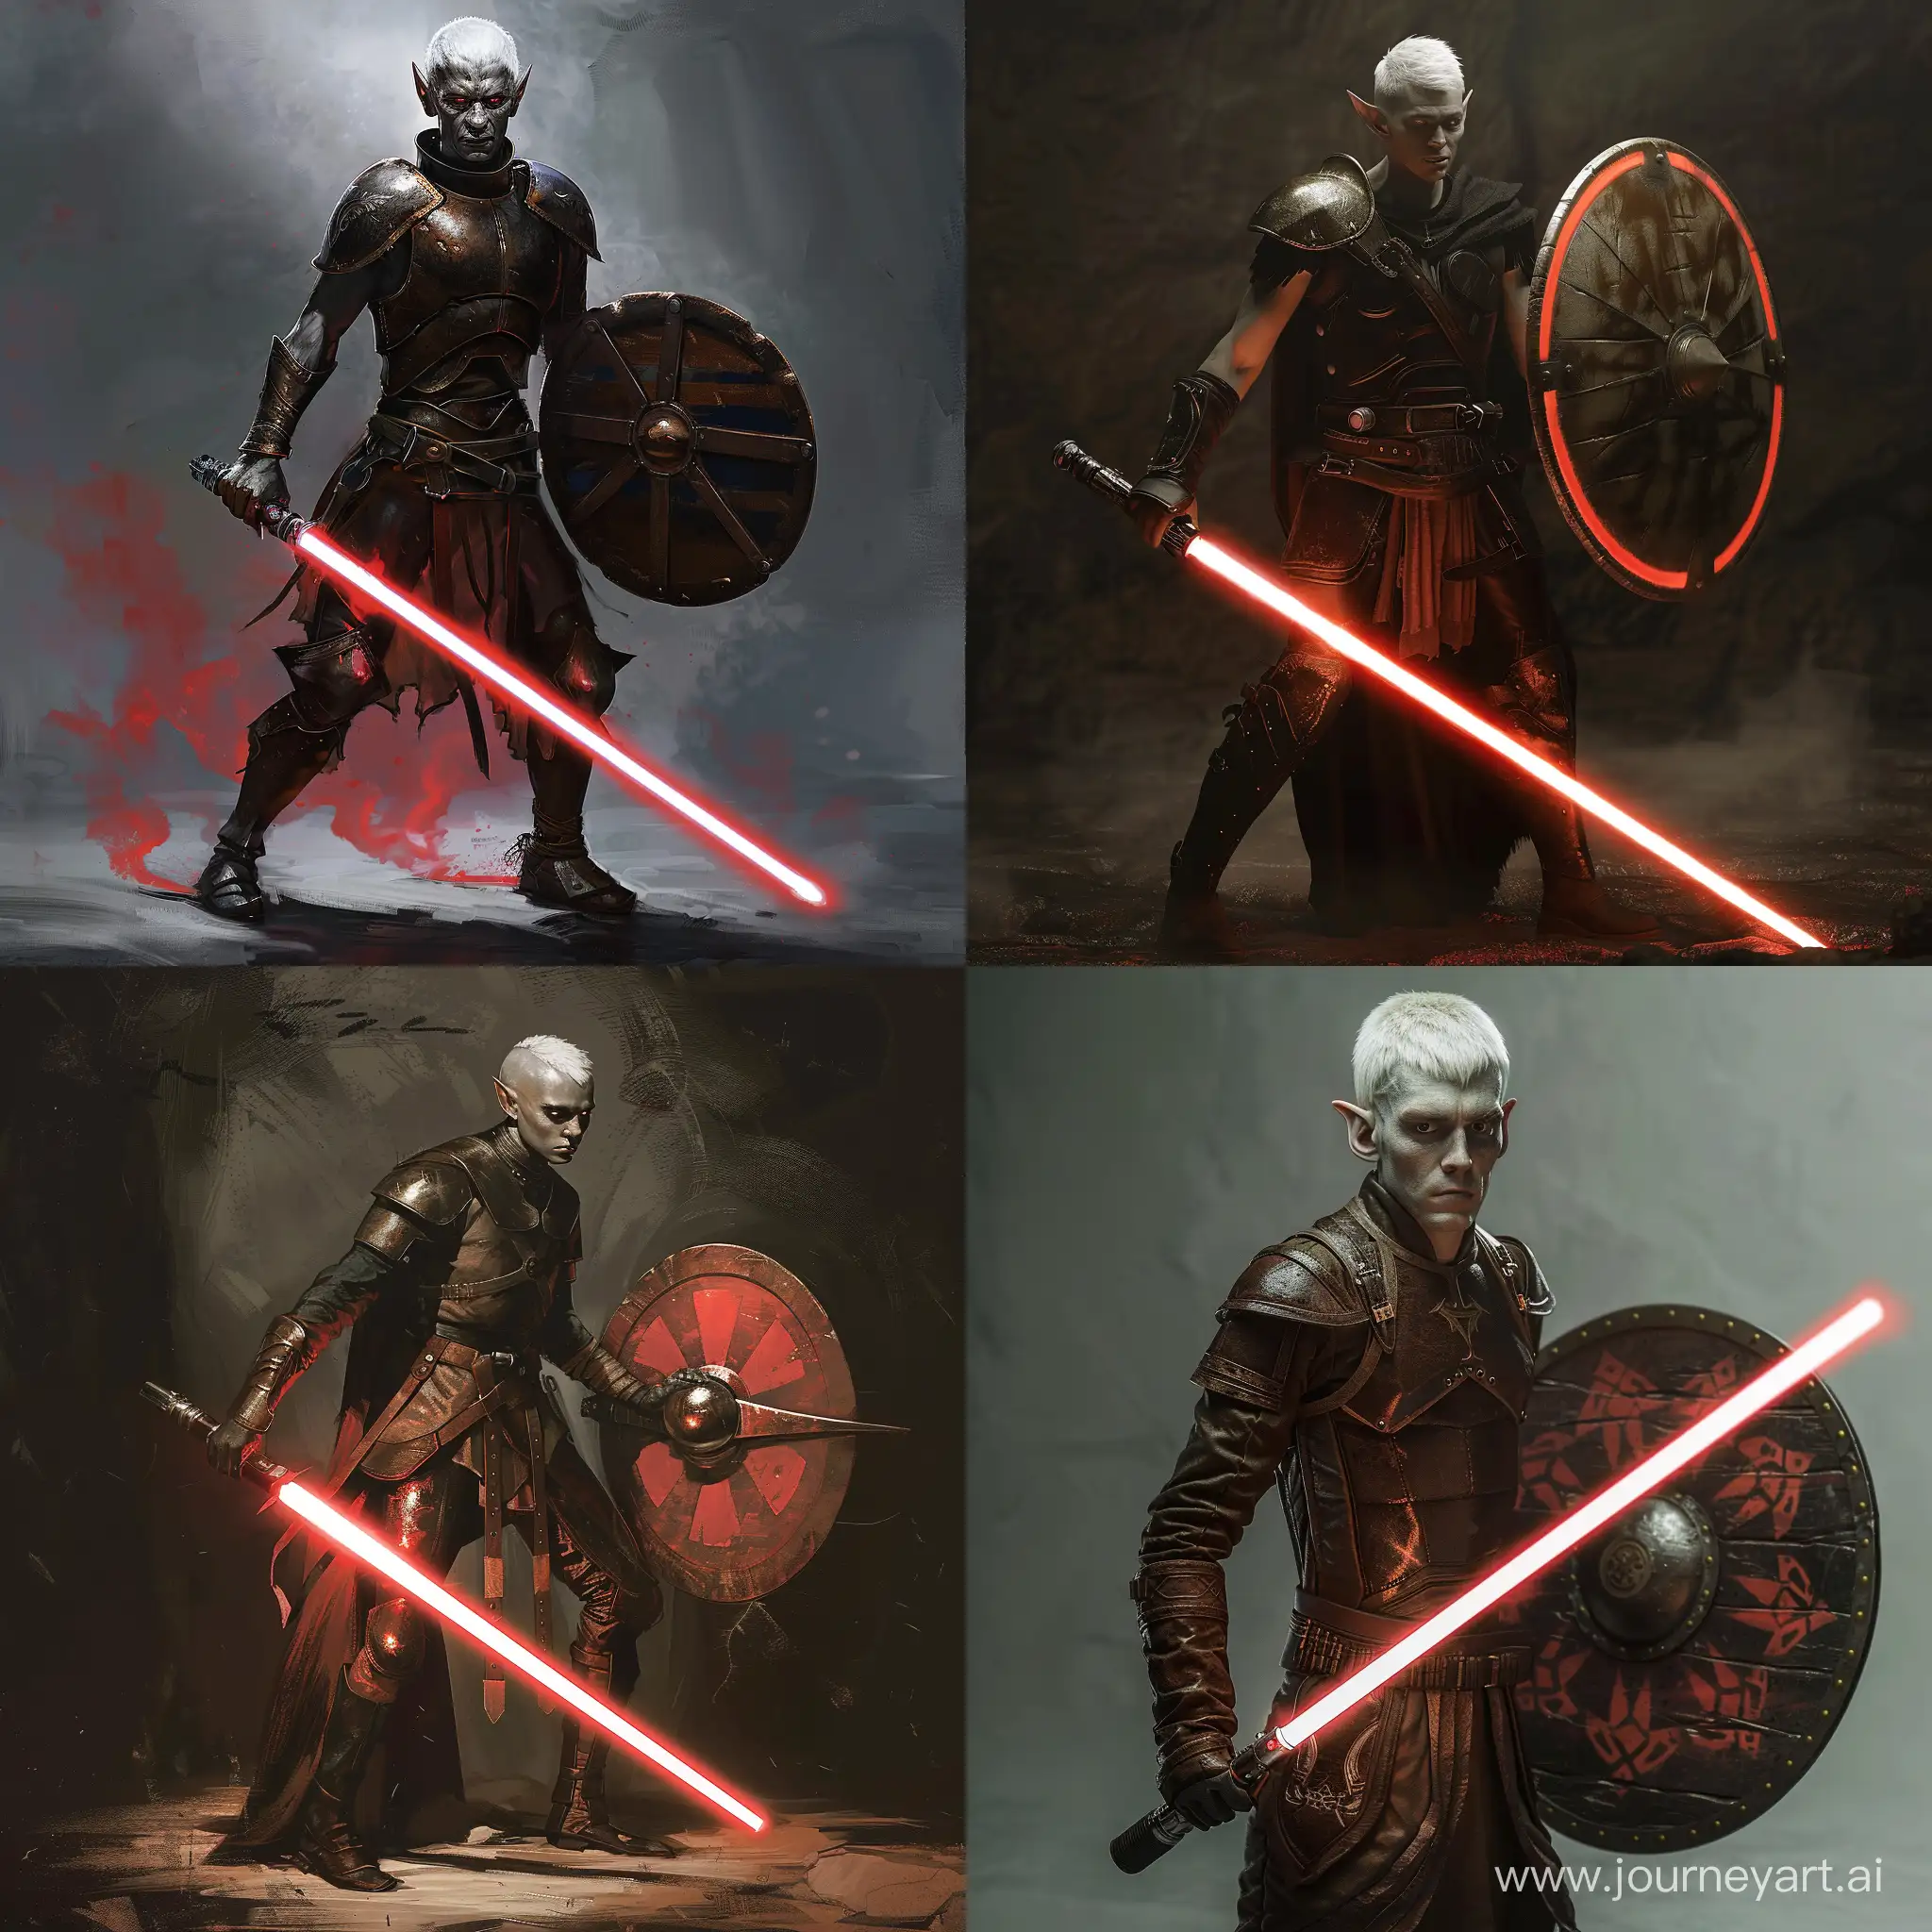 Male dark elf, lightsaber, shield in hand, short white hair, leather armor